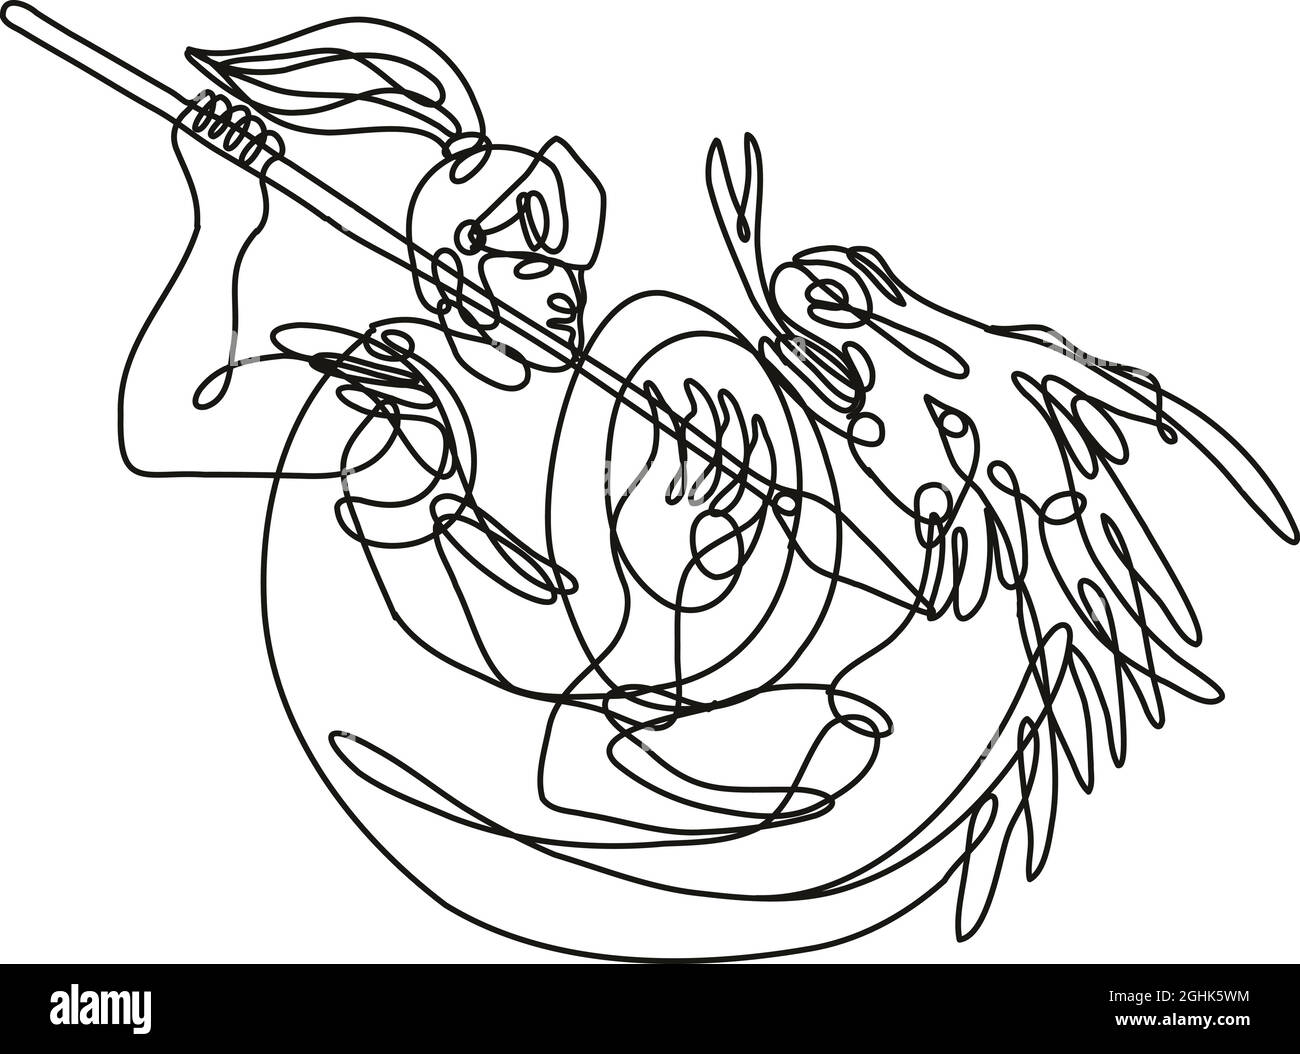 Dessin de ligne continue illustration du chevalier avec lance et bouclier combat dragon fait en ligne mono ou doodle style en noir et blanc sur isolé Illustration de Vecteur